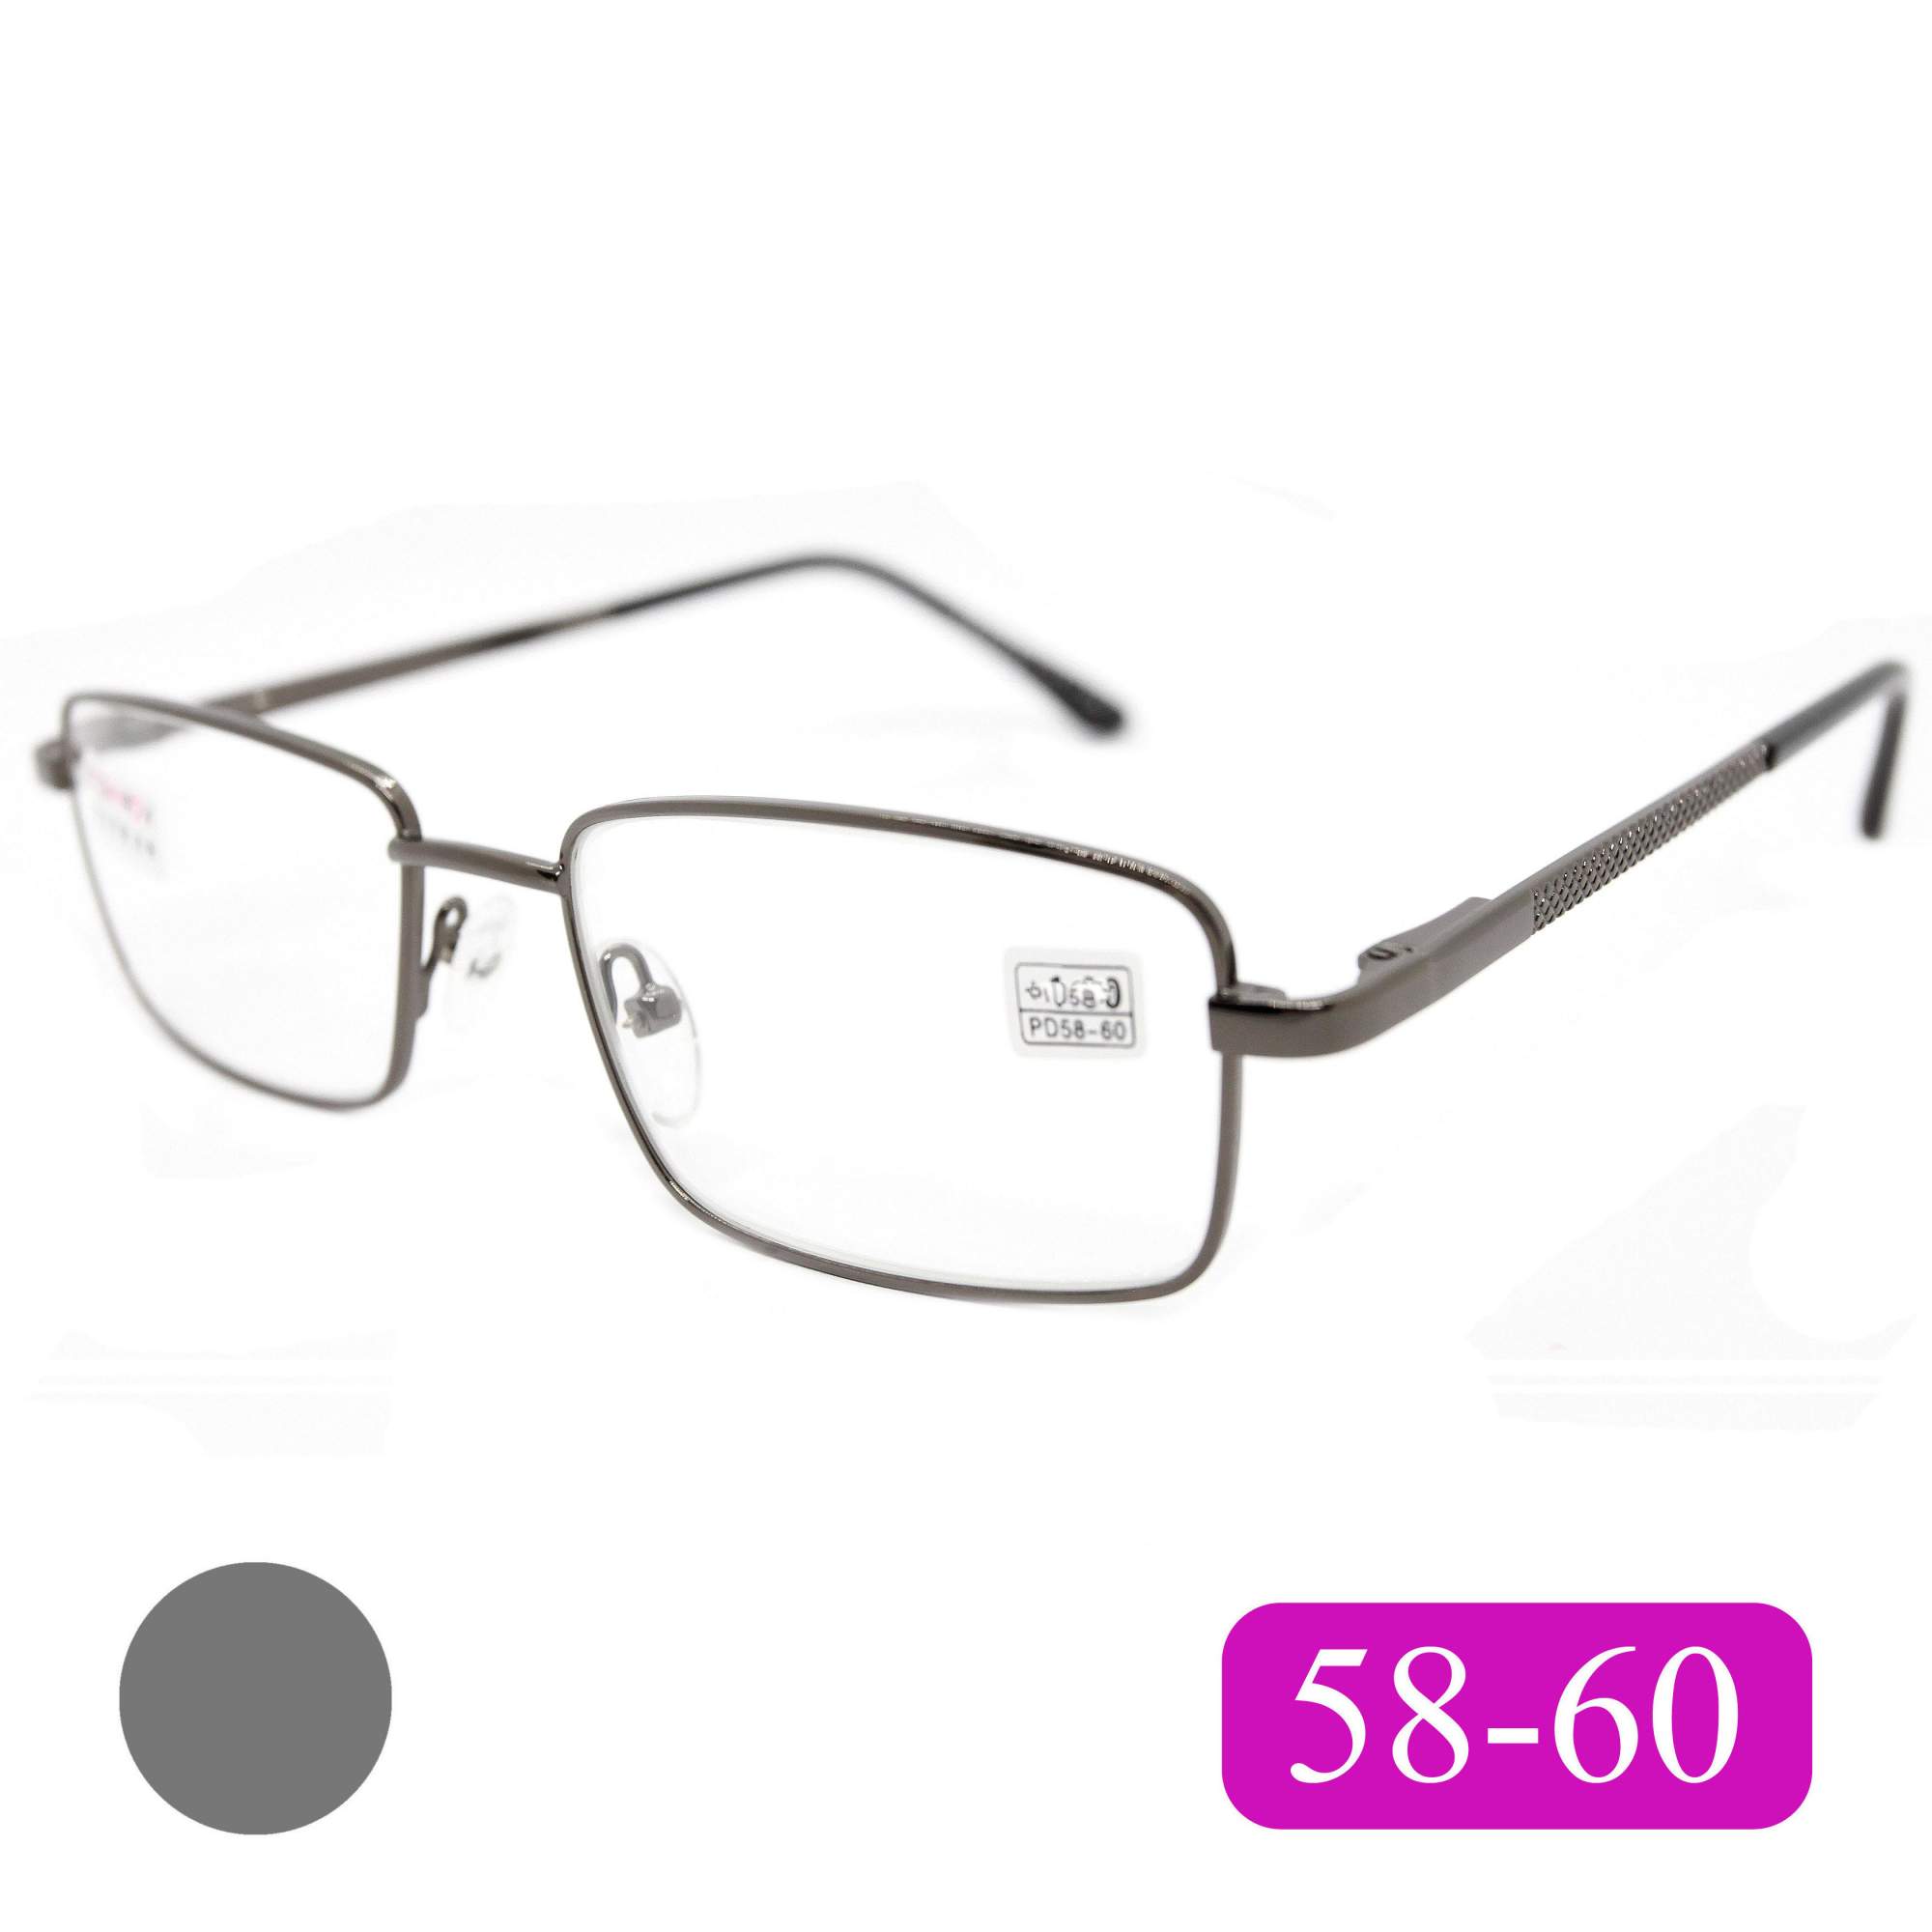 Готовые очки Fedrov 569, со стеклянной линзой, +2,00, без футляра, цвет серый, РЦ 58-60